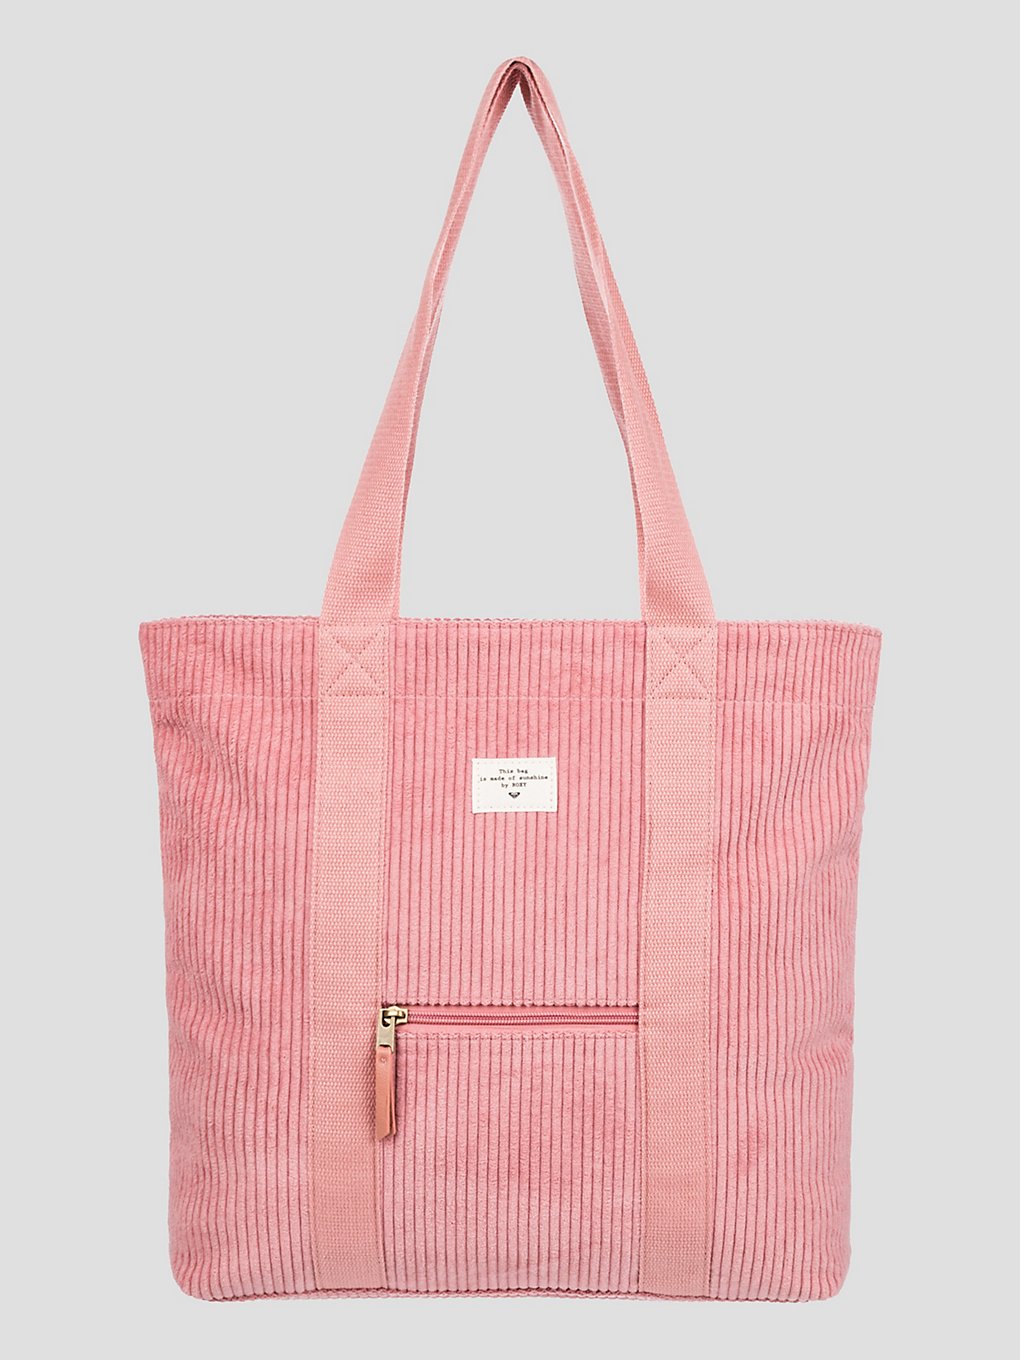 Roxy Cozy Nature Tote Handtasche sachet pink kaufen